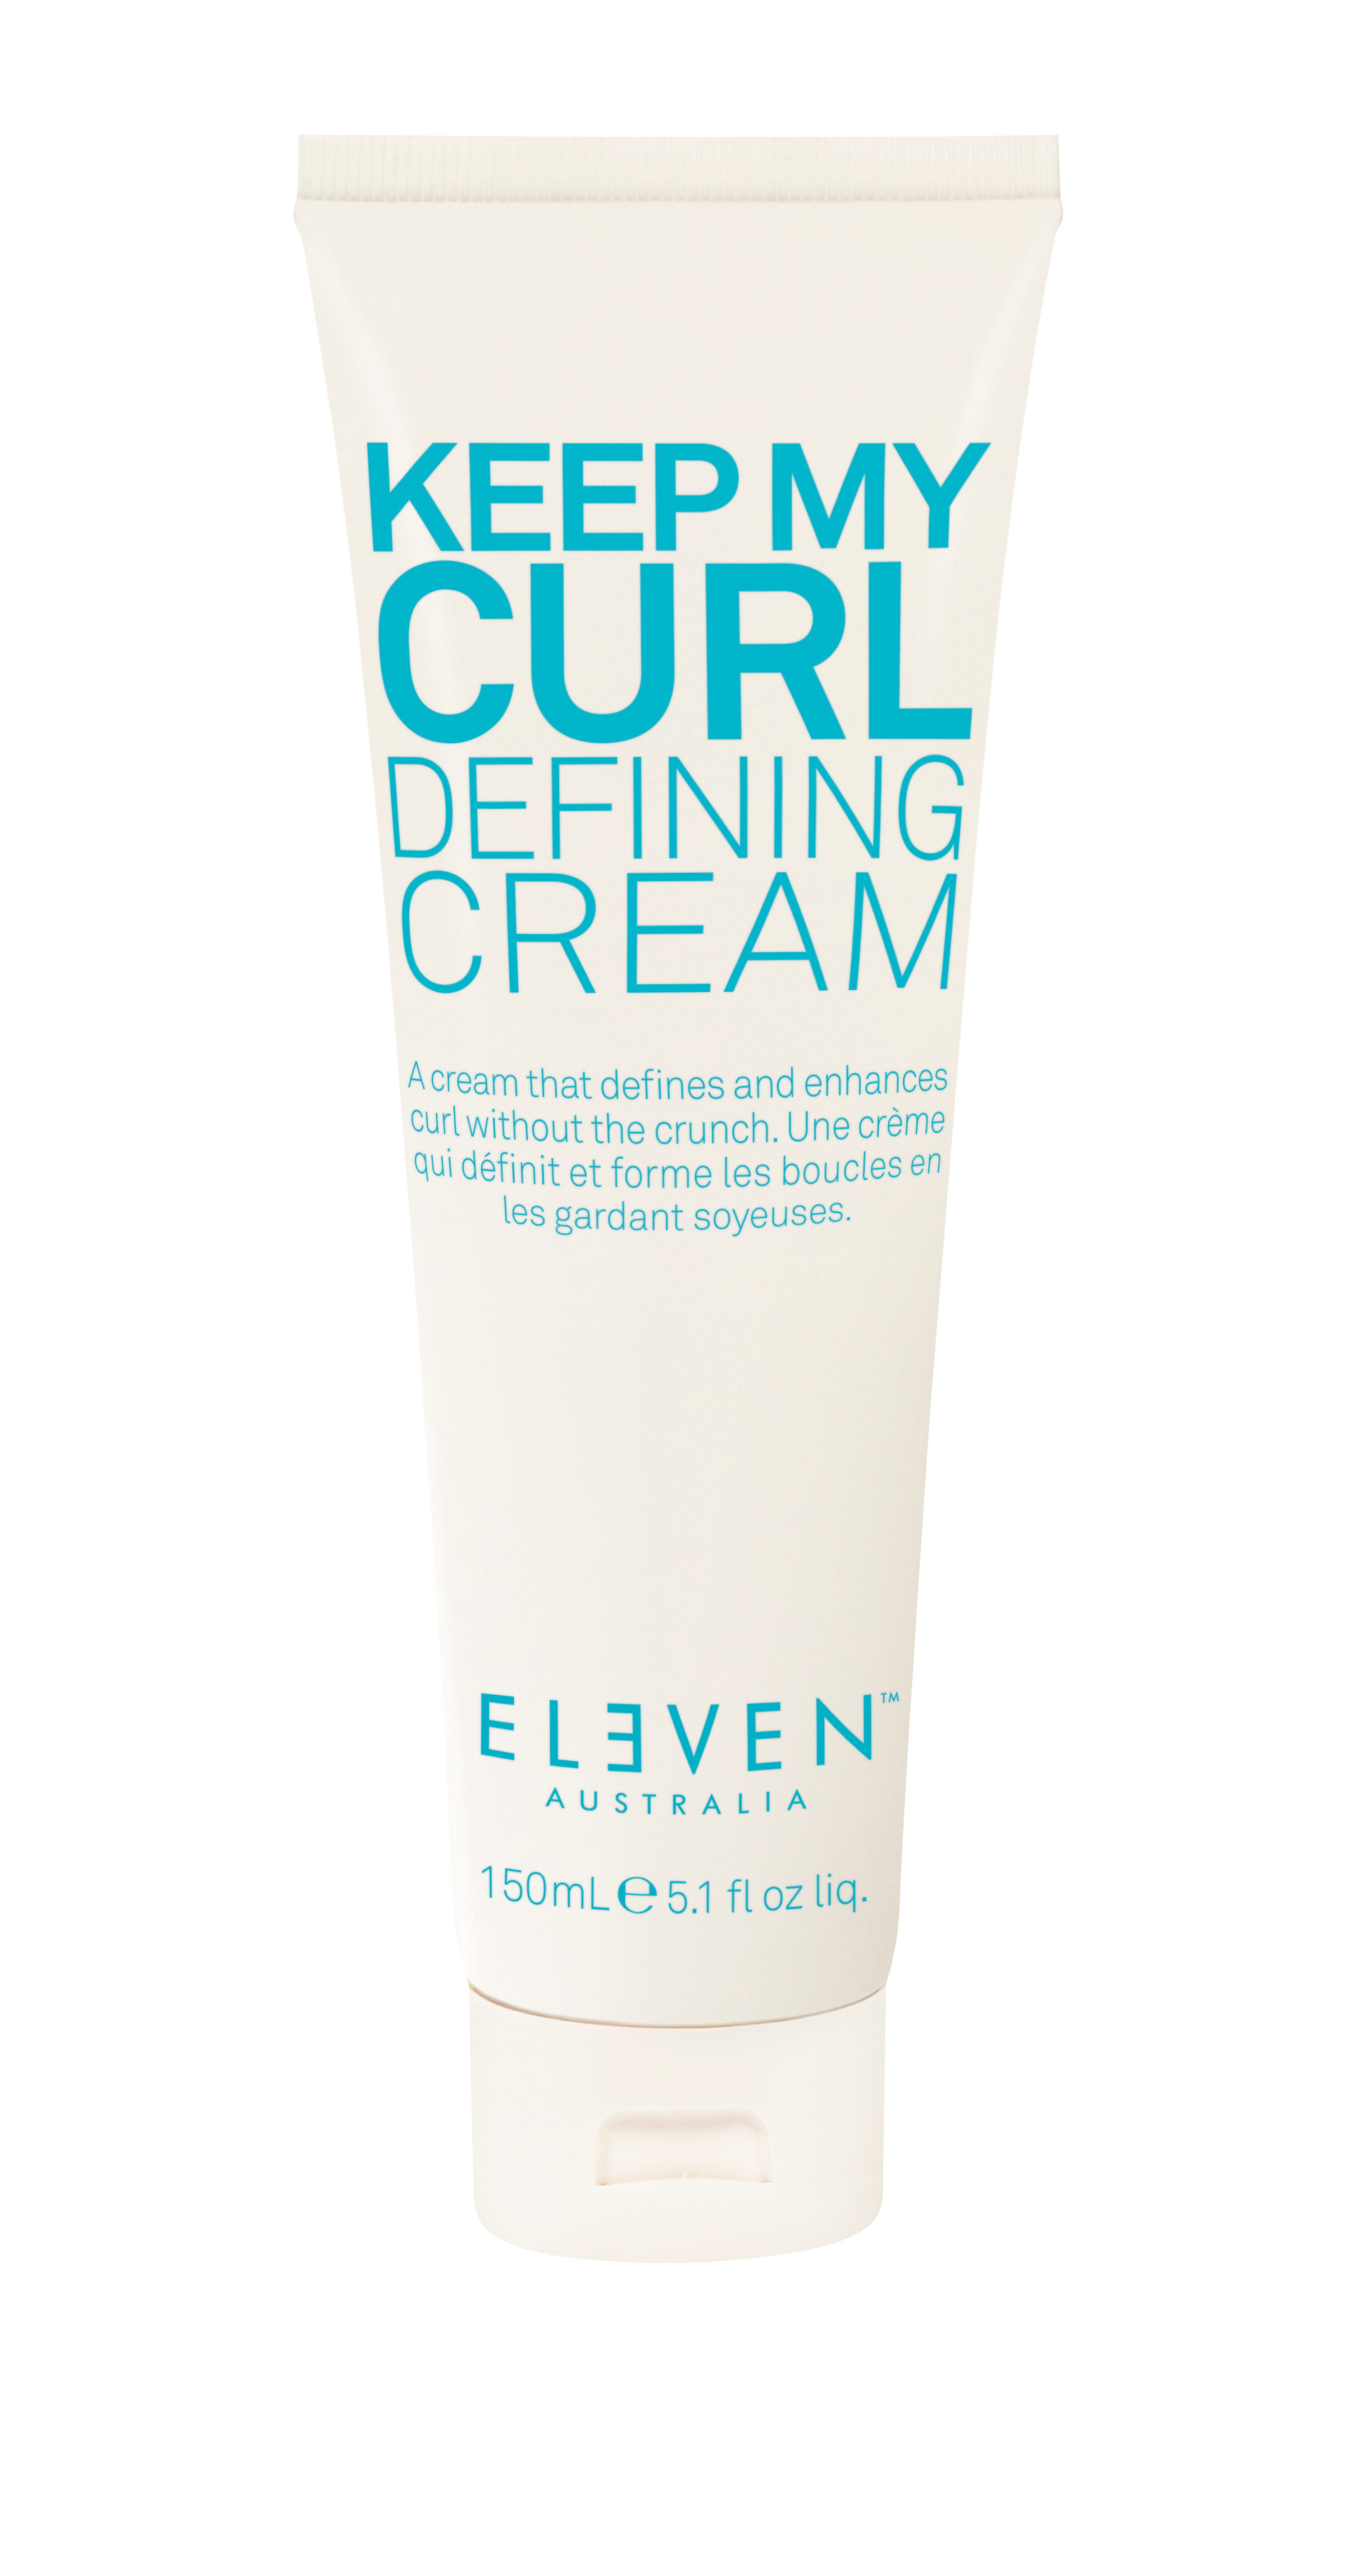 Frizz Control Shaping Cream 5.1 fl oz - Eleven Australia – ELEVEN Australia